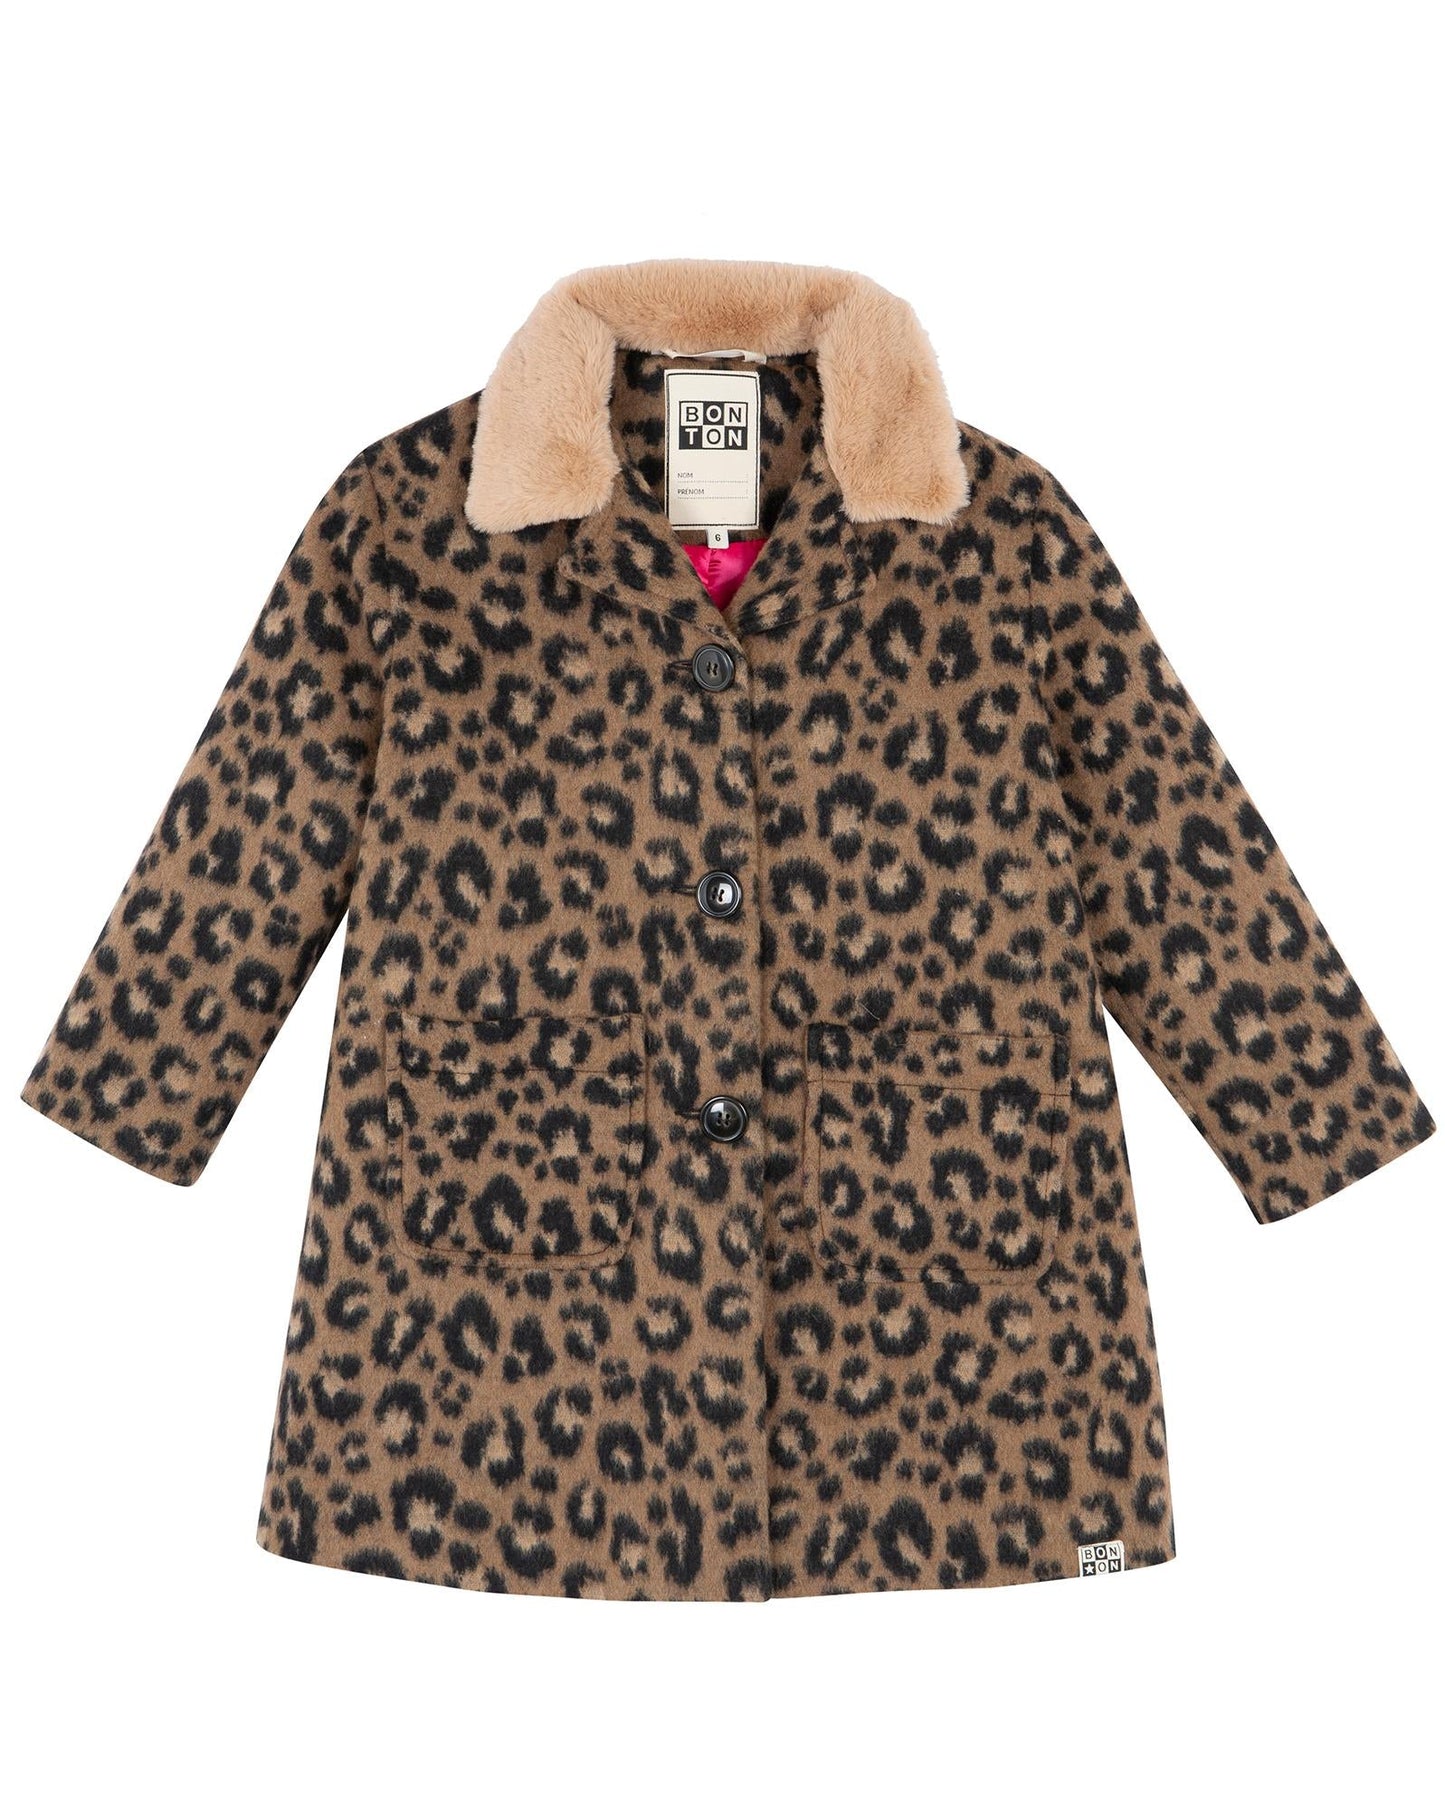 Coat - Hilda brown in woolen Print leopard